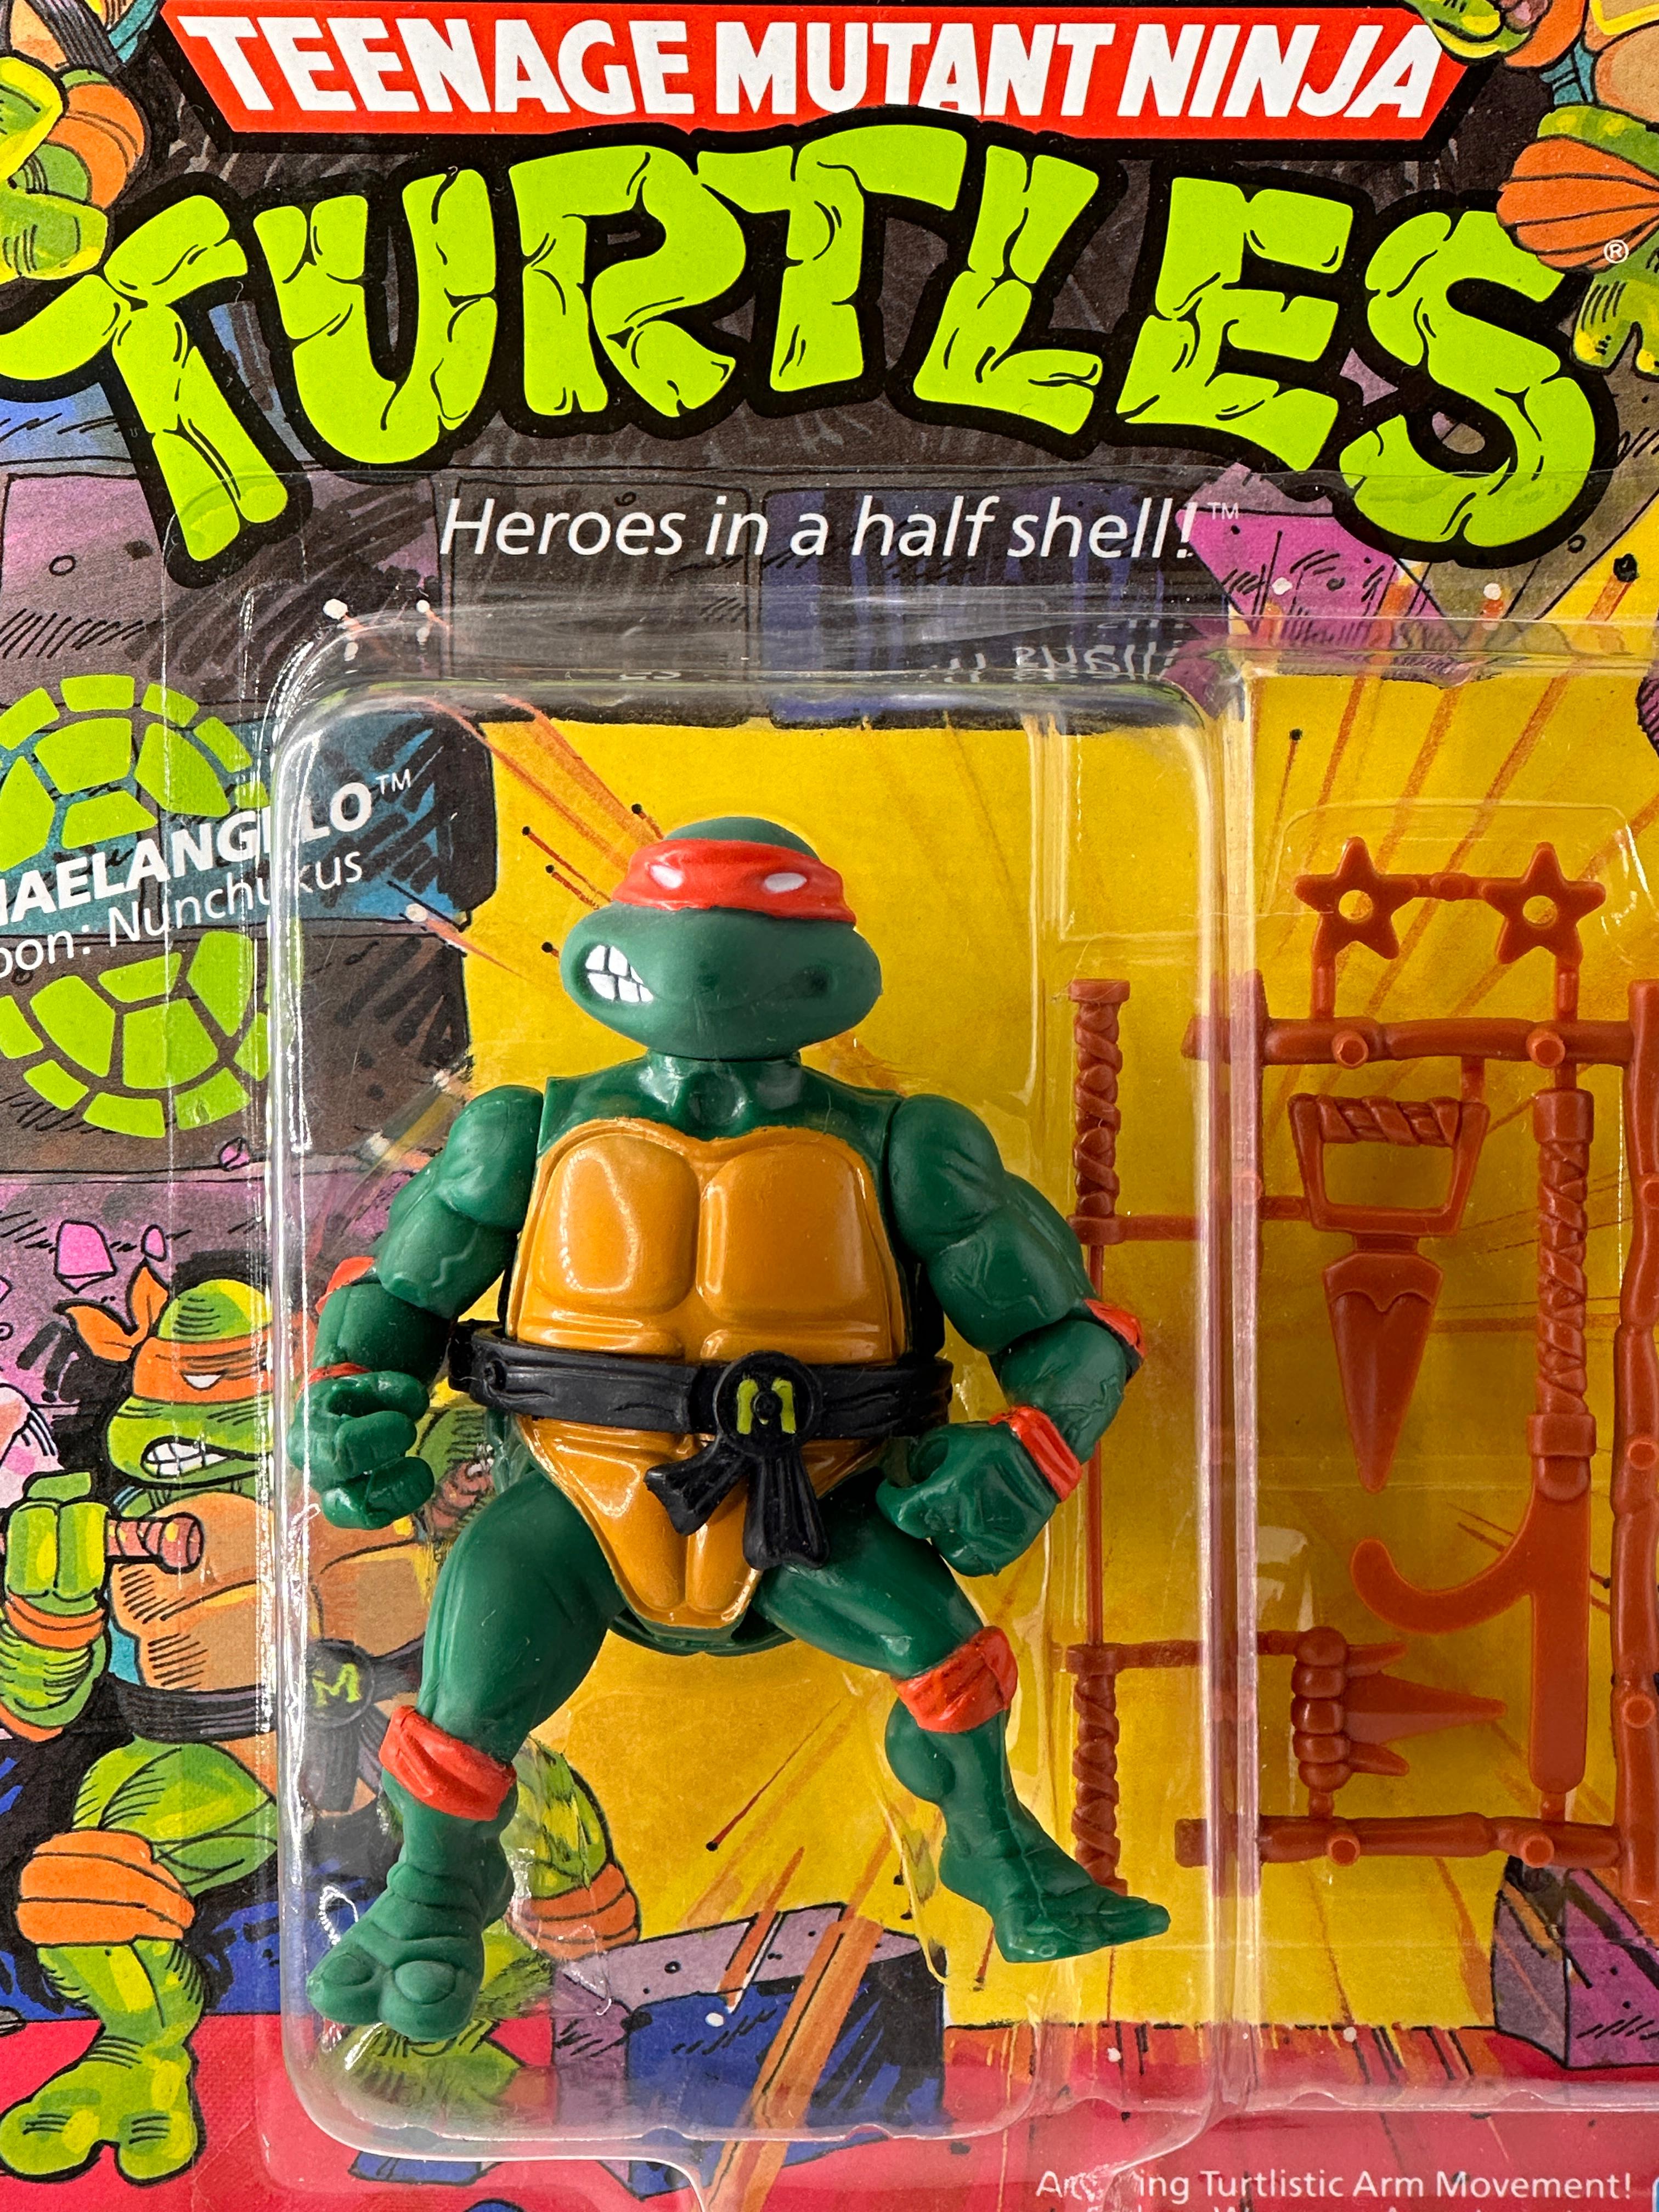 1988 TMNT/Teenage Mutant Ninja Turtles Playmates Michaelangelo Action Figure